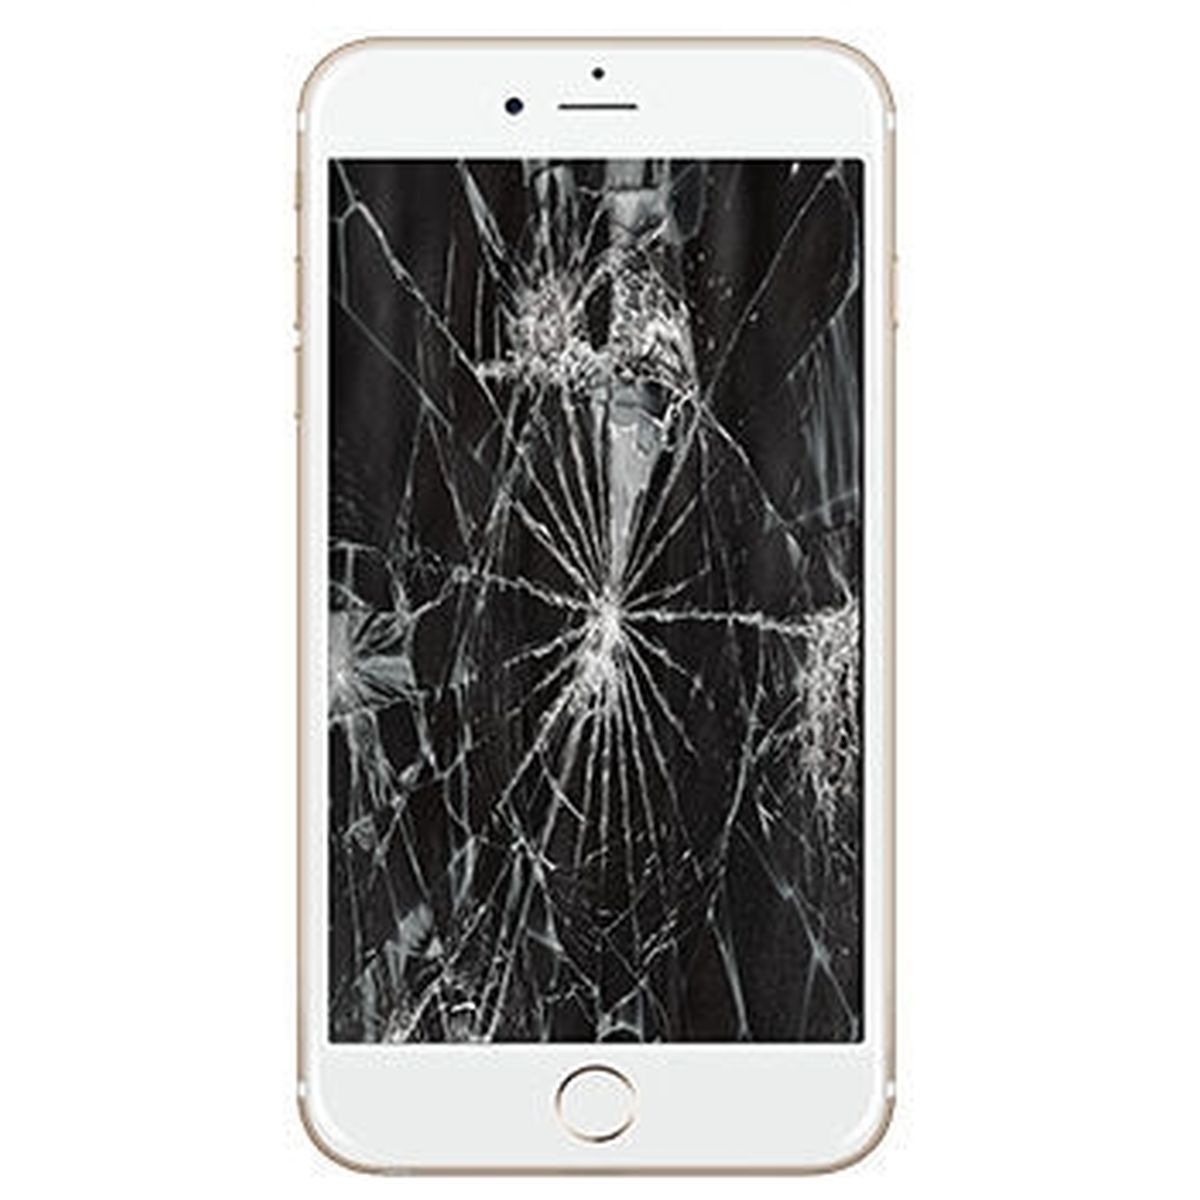 Armstrong overskydende Skrivemaskine iPhone 6 komplet glas udskiftning i hvid - Bestil